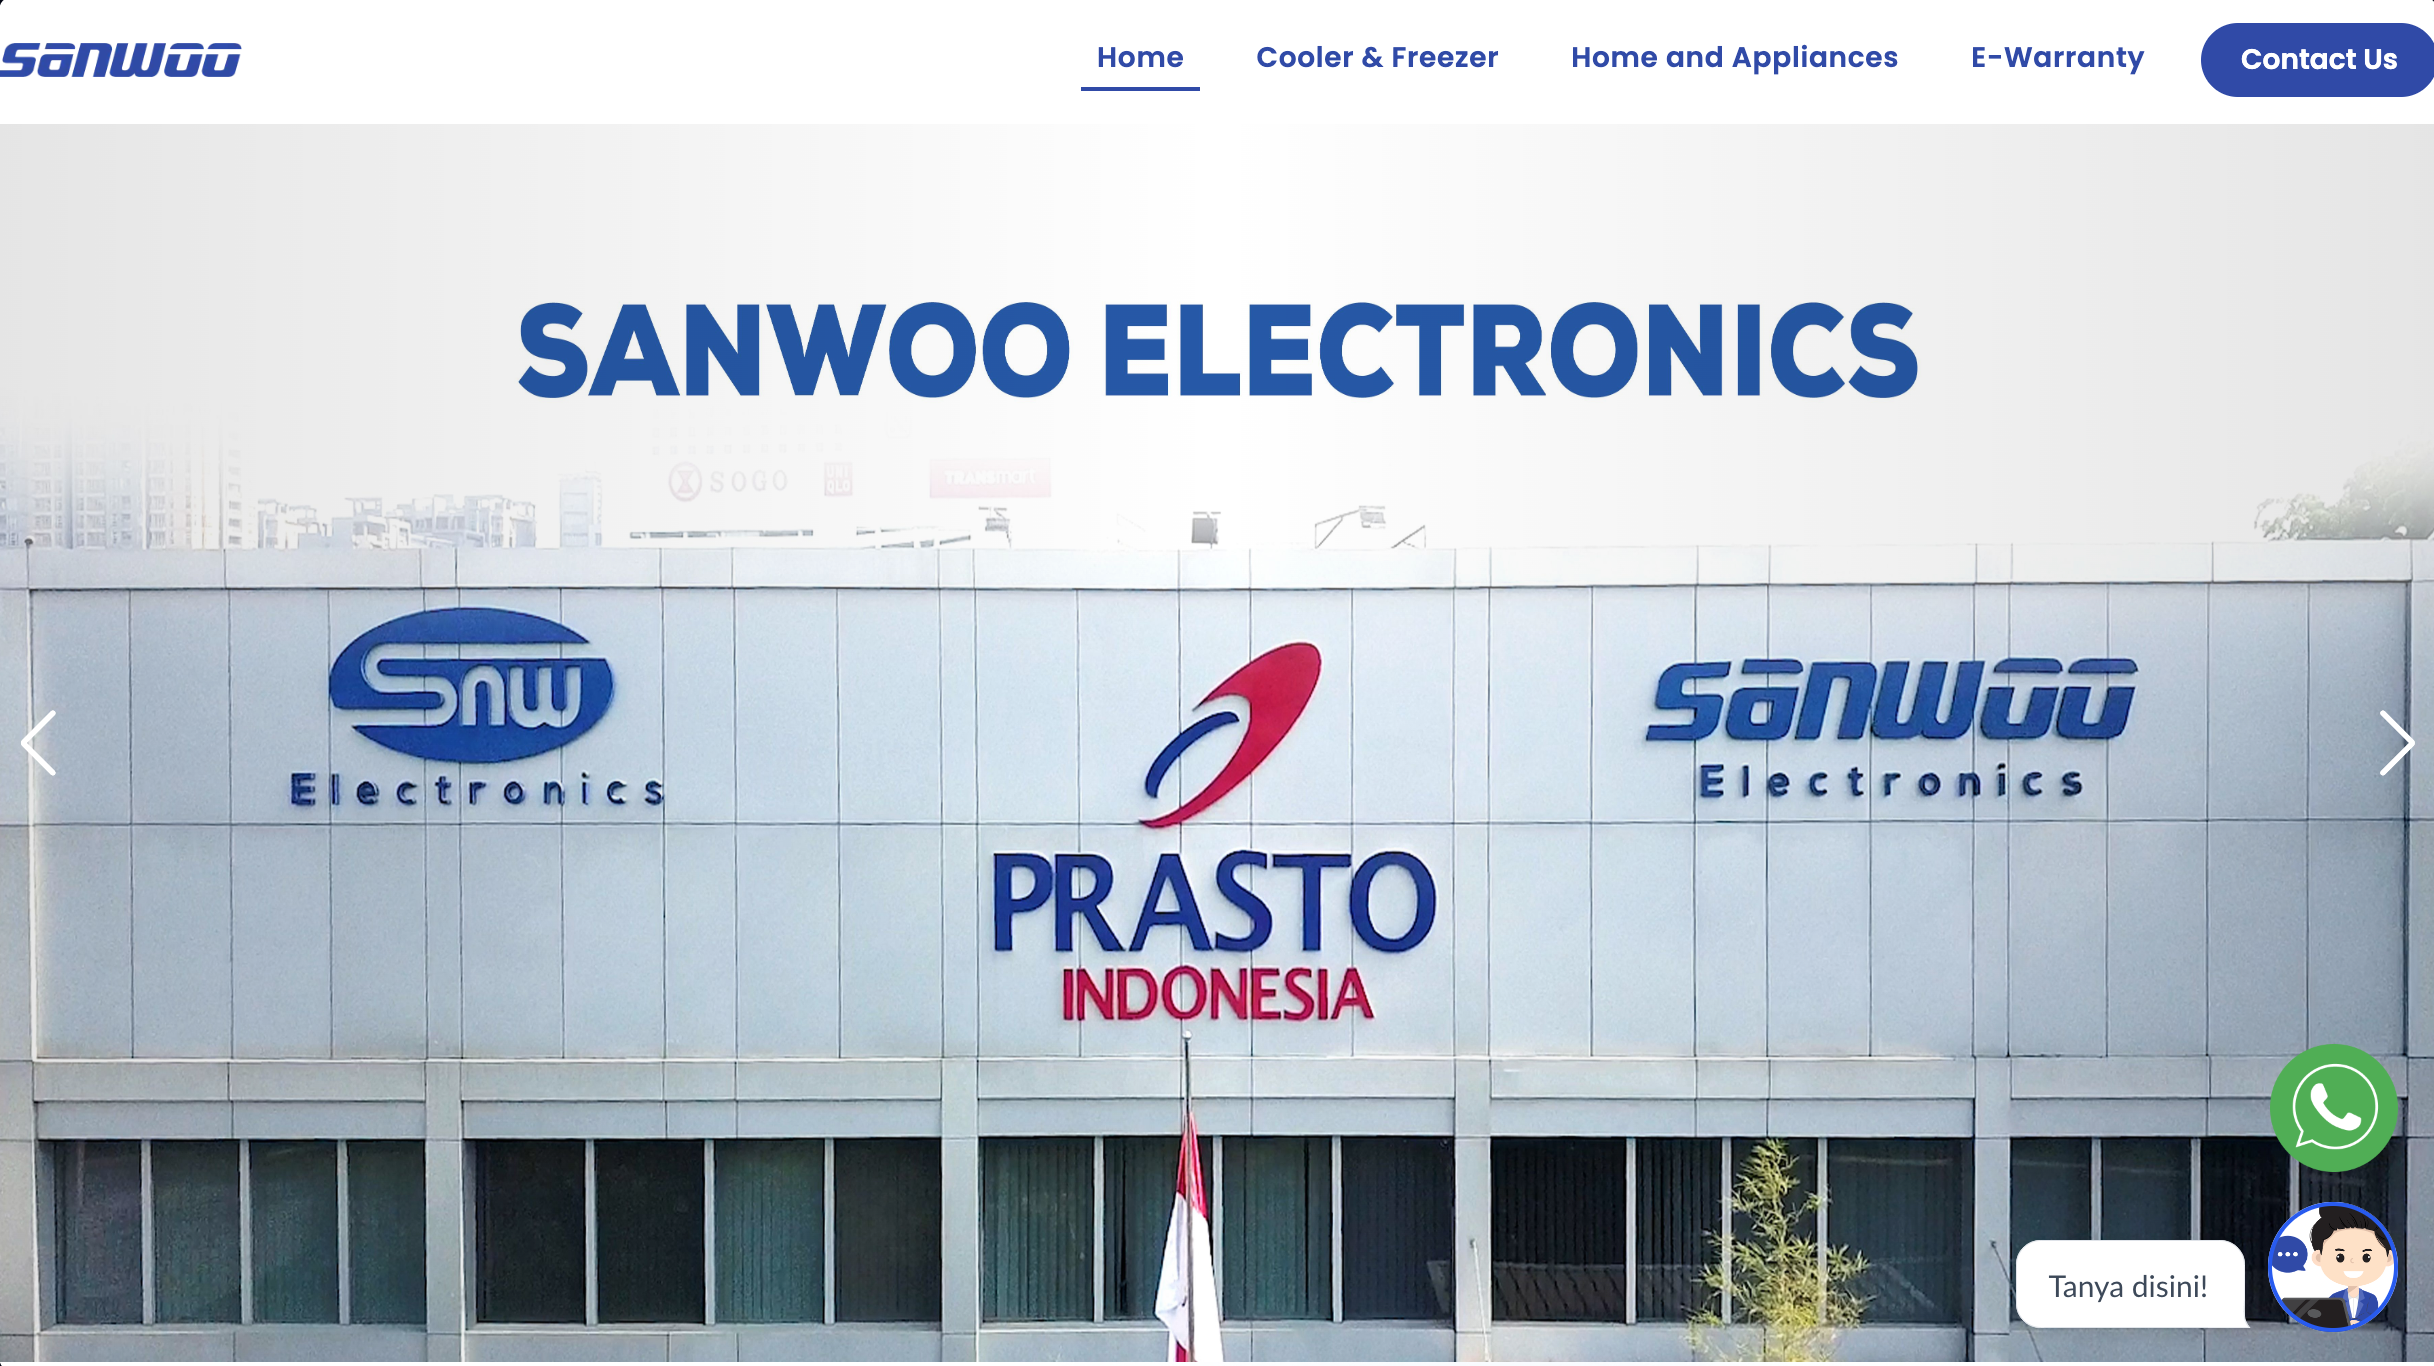 Image Sanwoo Electronics Website